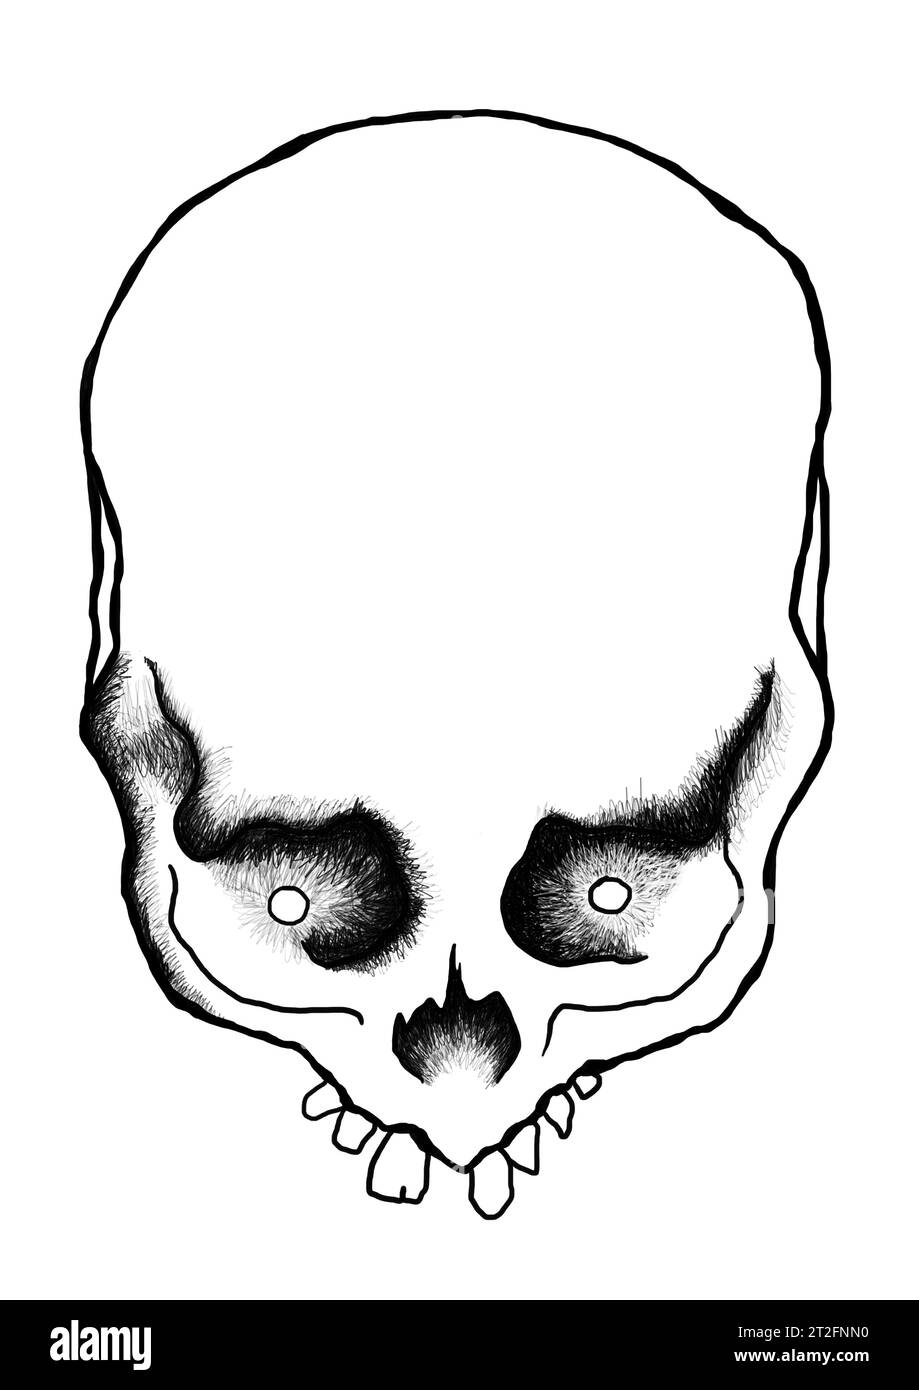 Schädel und gekreuzte Knochen, Schädel mit abgebrochenen Zähnen. Abbildung, schwarz-weiße Bleistiftzeichnung Stockfoto